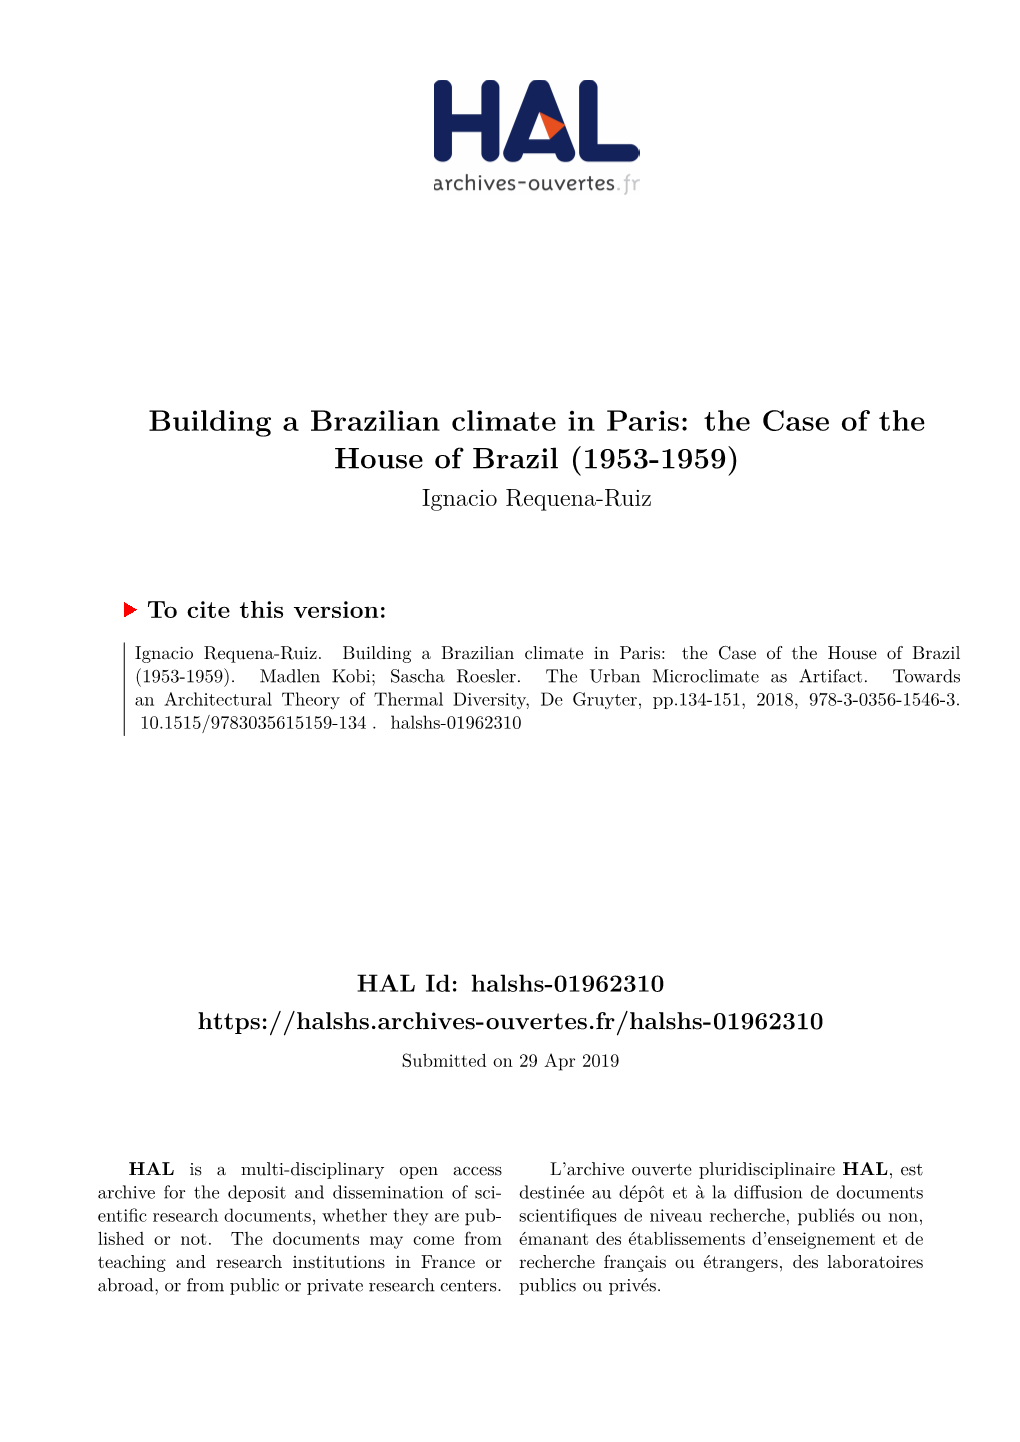 Building a Brazilian Climate in Paris: the Case of the House of Brazil (1953-1959) Ignacio Requena-Ruiz